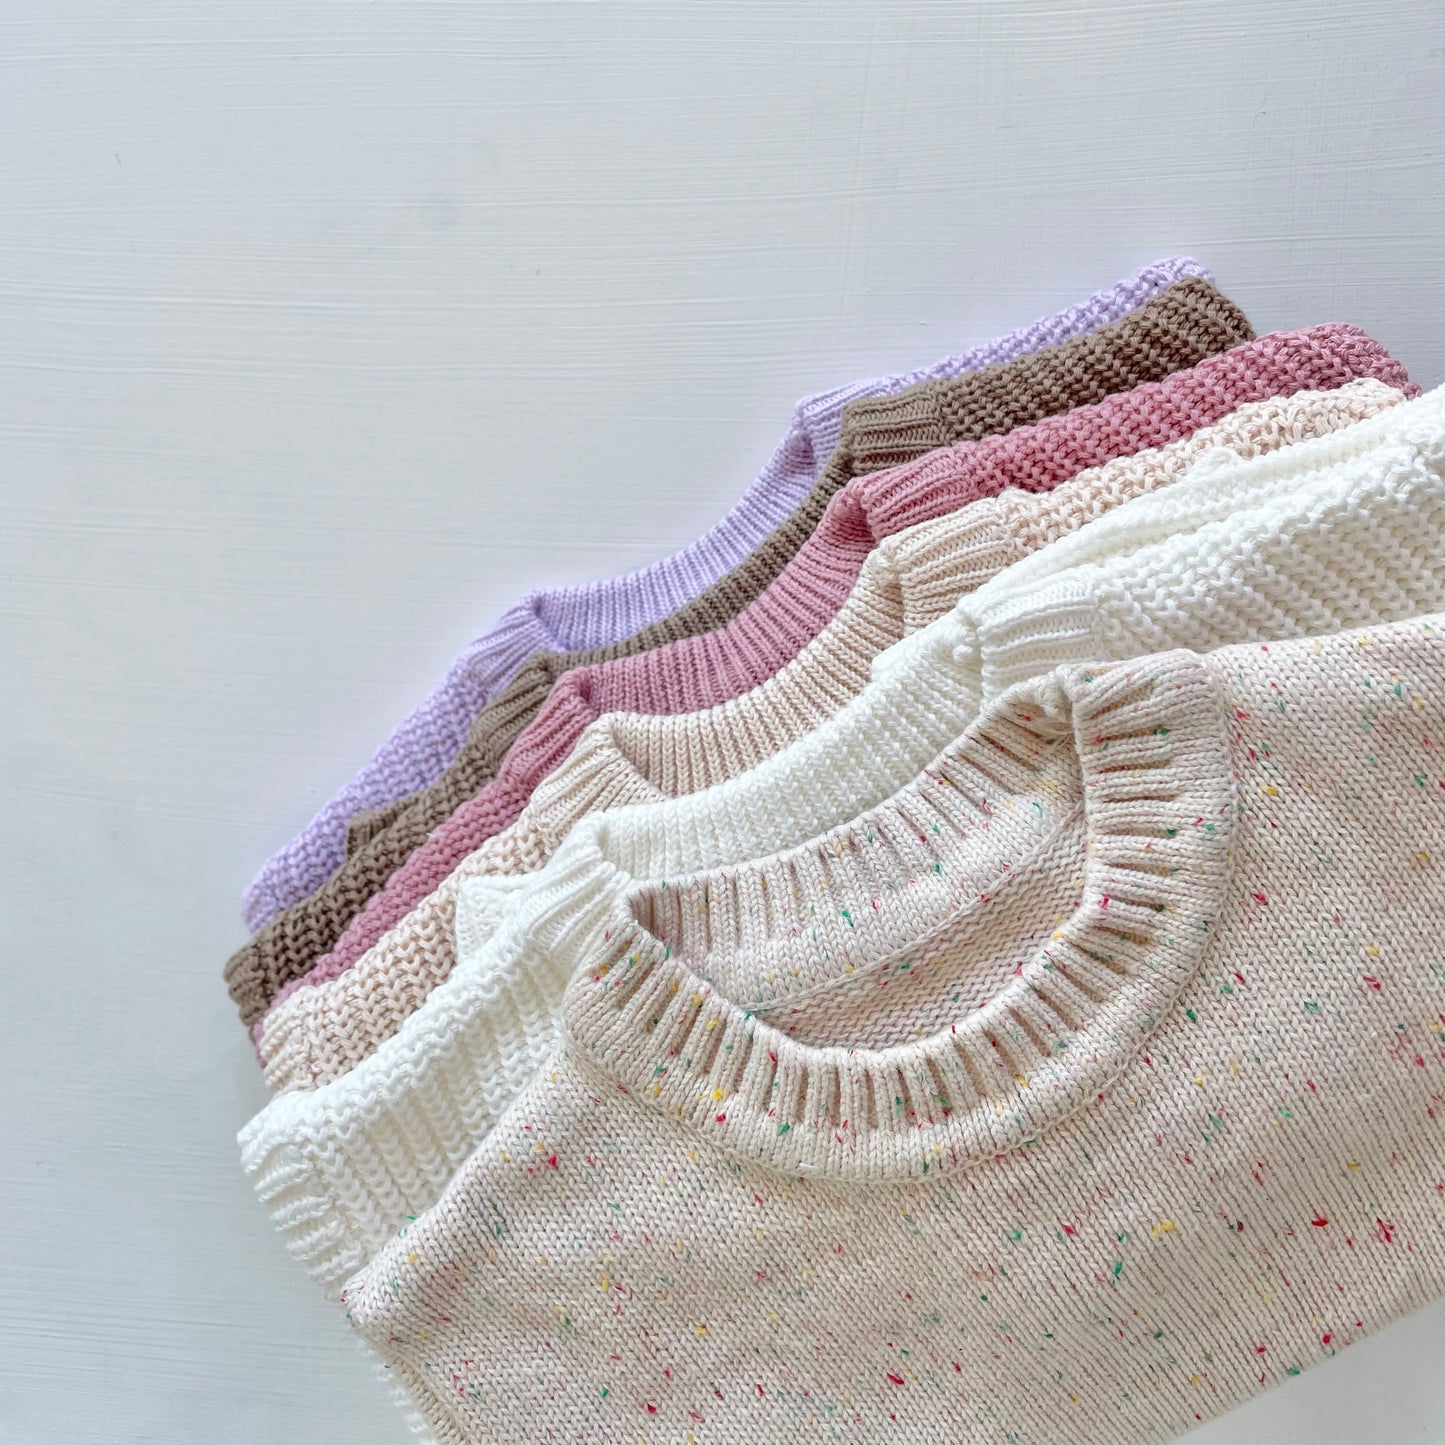 Plain knits